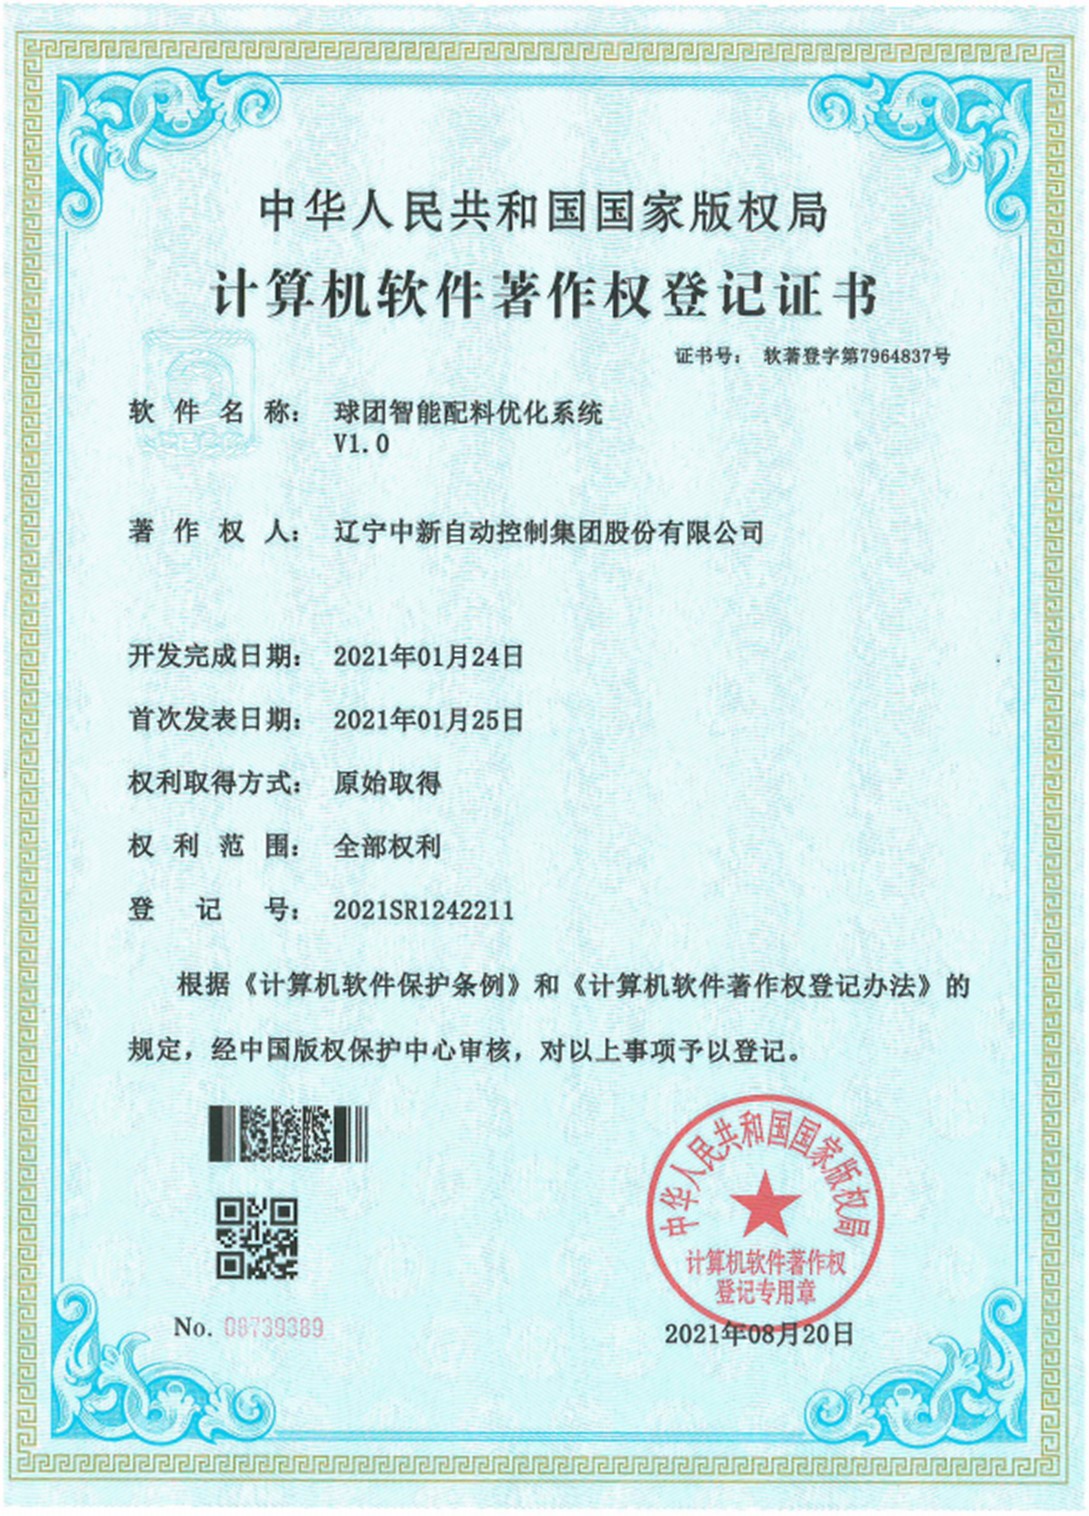 球团智能配料优化系统V1.0-资质证书-辽宁中新